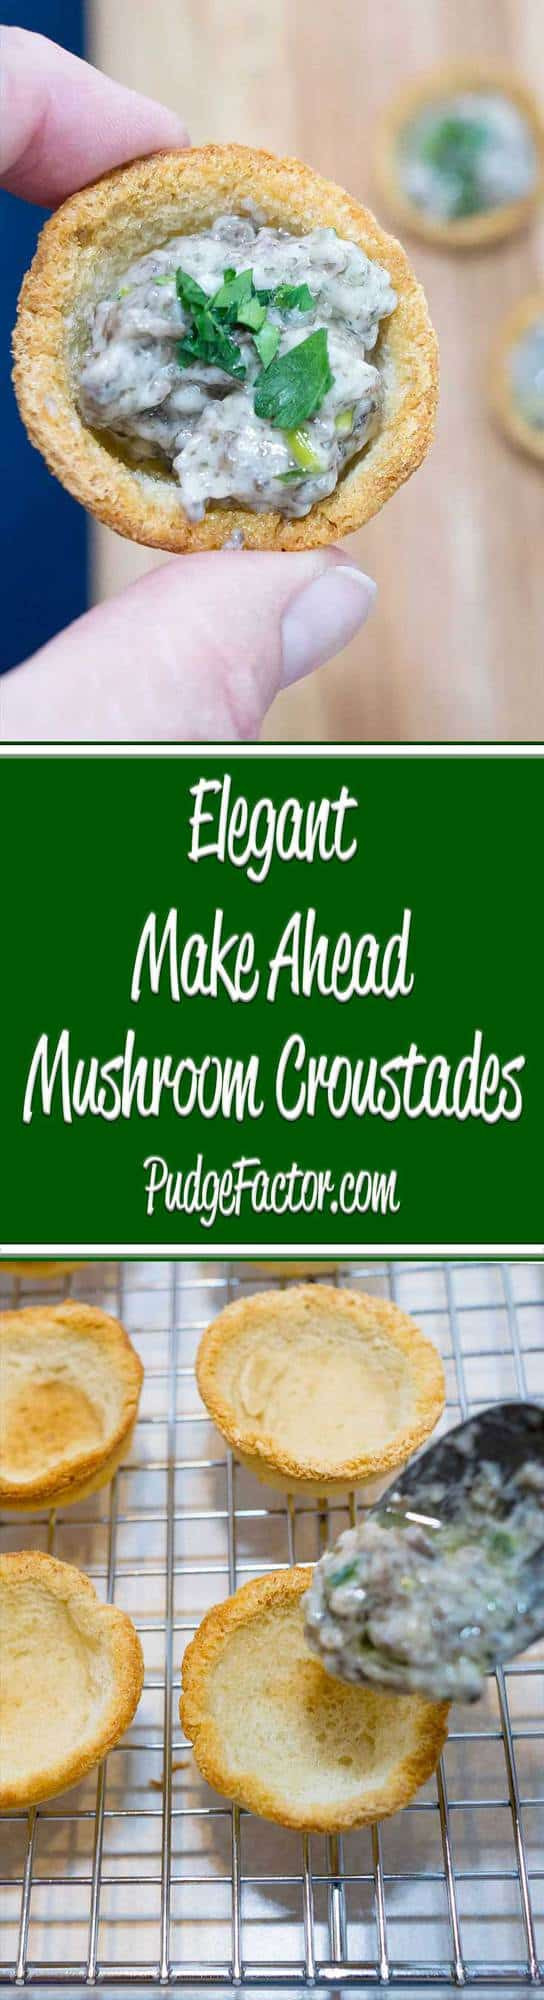 Mushroom Appetizers Make Ahead
 Elegant Make Ahead Mushroom Croustades Pudge Factor